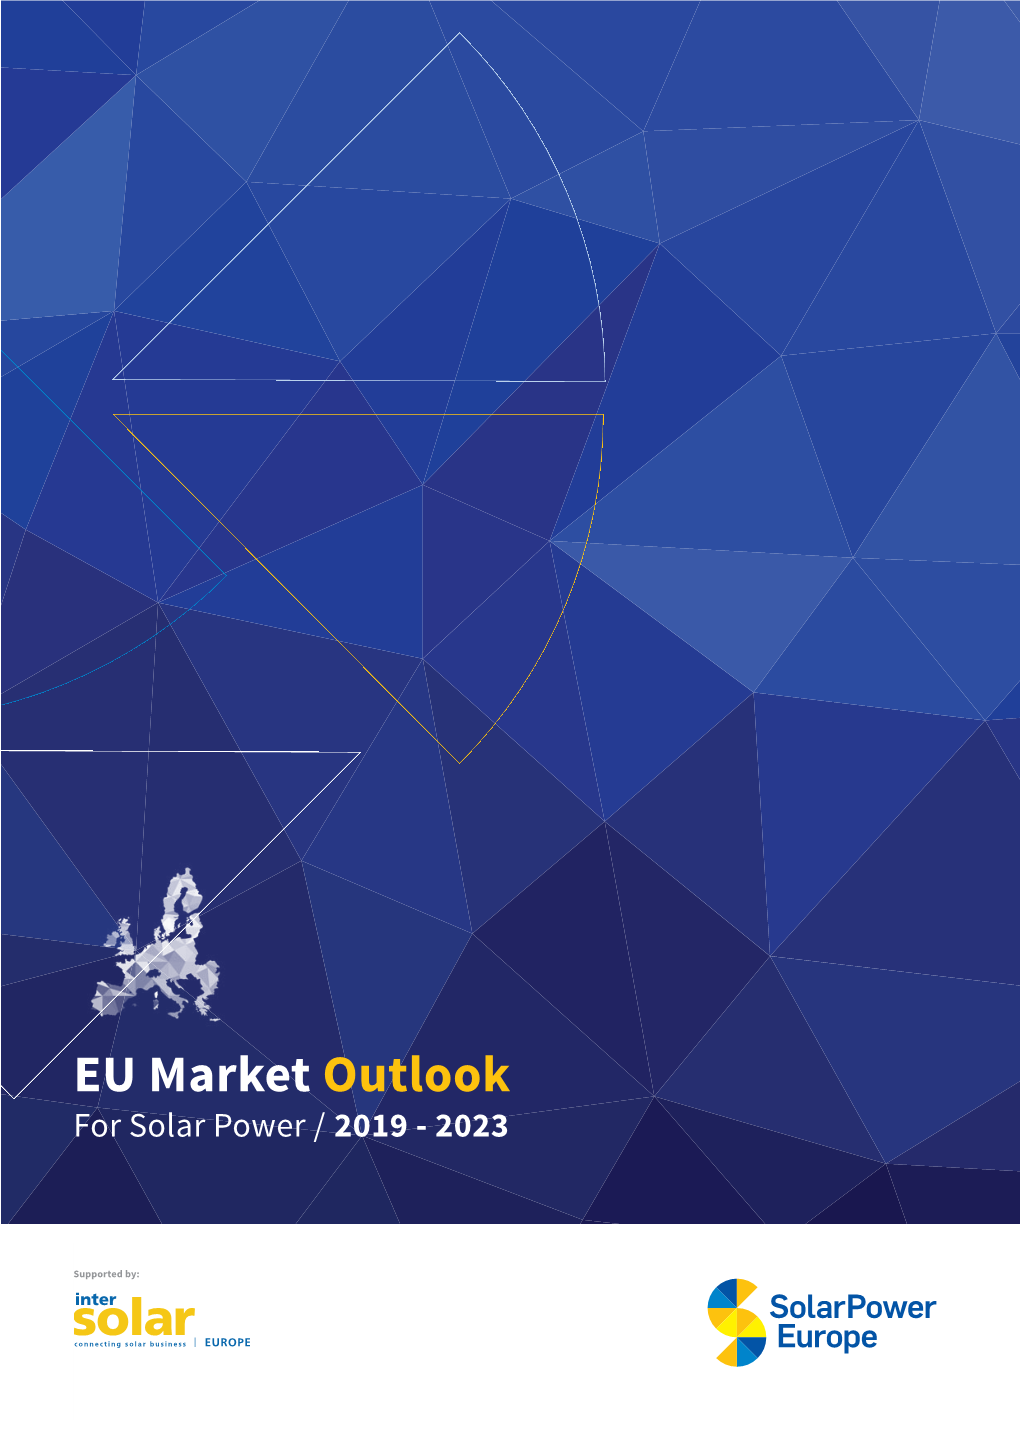 EU Market Outlook for Solar Power / 2019 - 2023